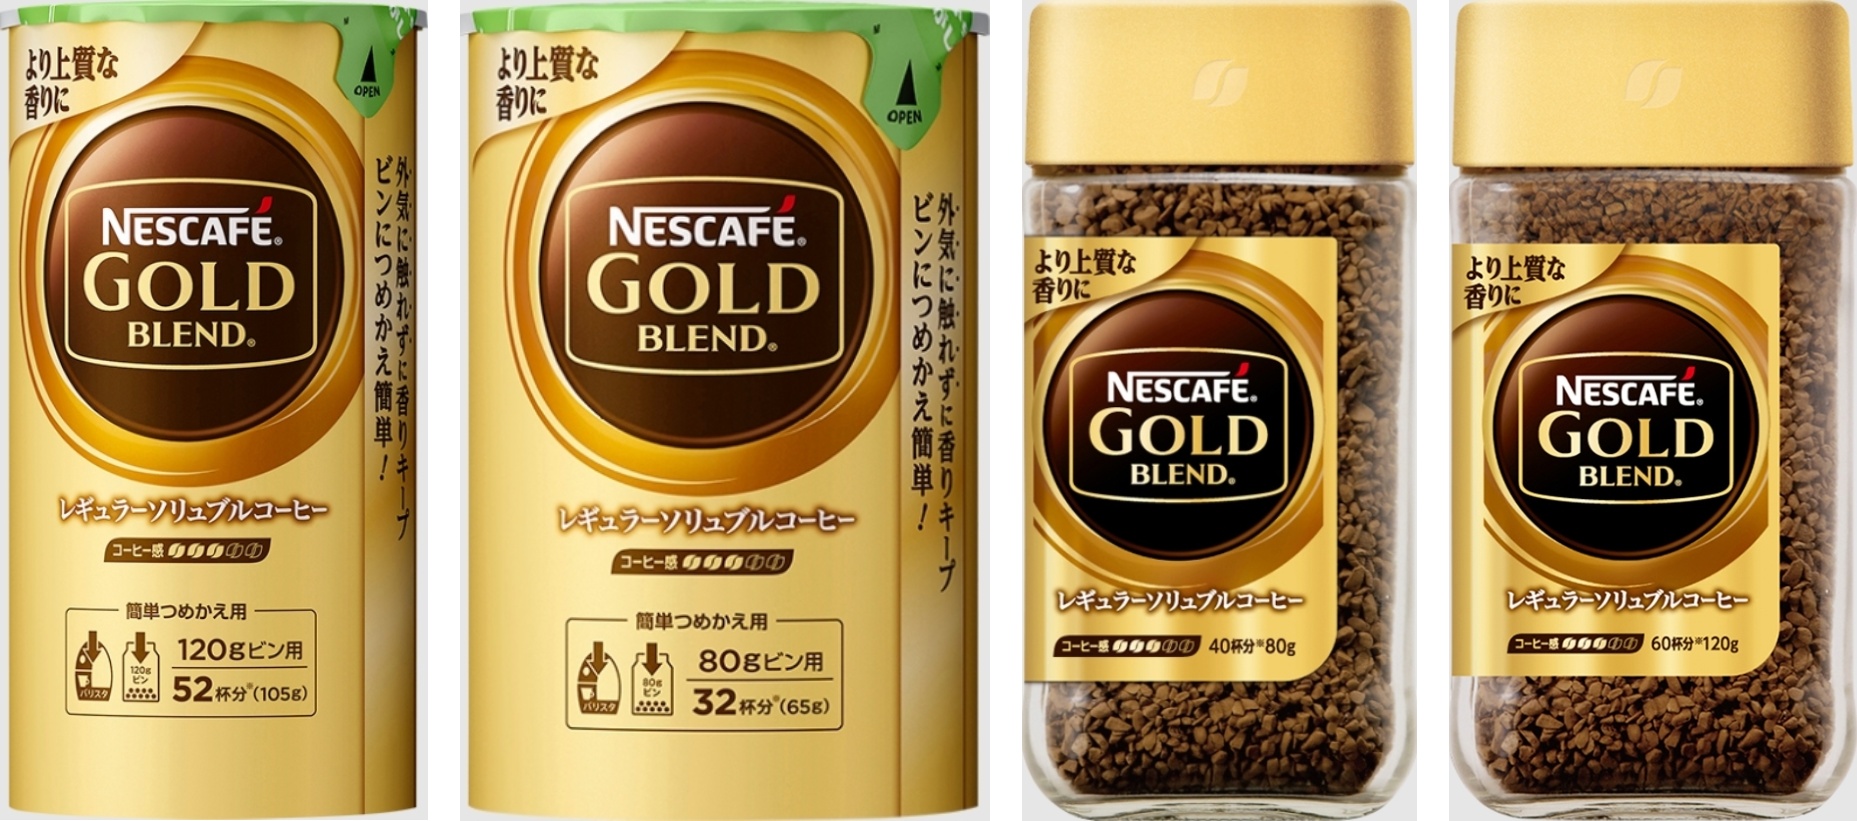 【高評価】ネスカフェ ゴールドブレンド 瓶150g[ネスレ日本][発売日:2009/9/1]のクチコミ・評価・値段・価格情報【もぐナビ】